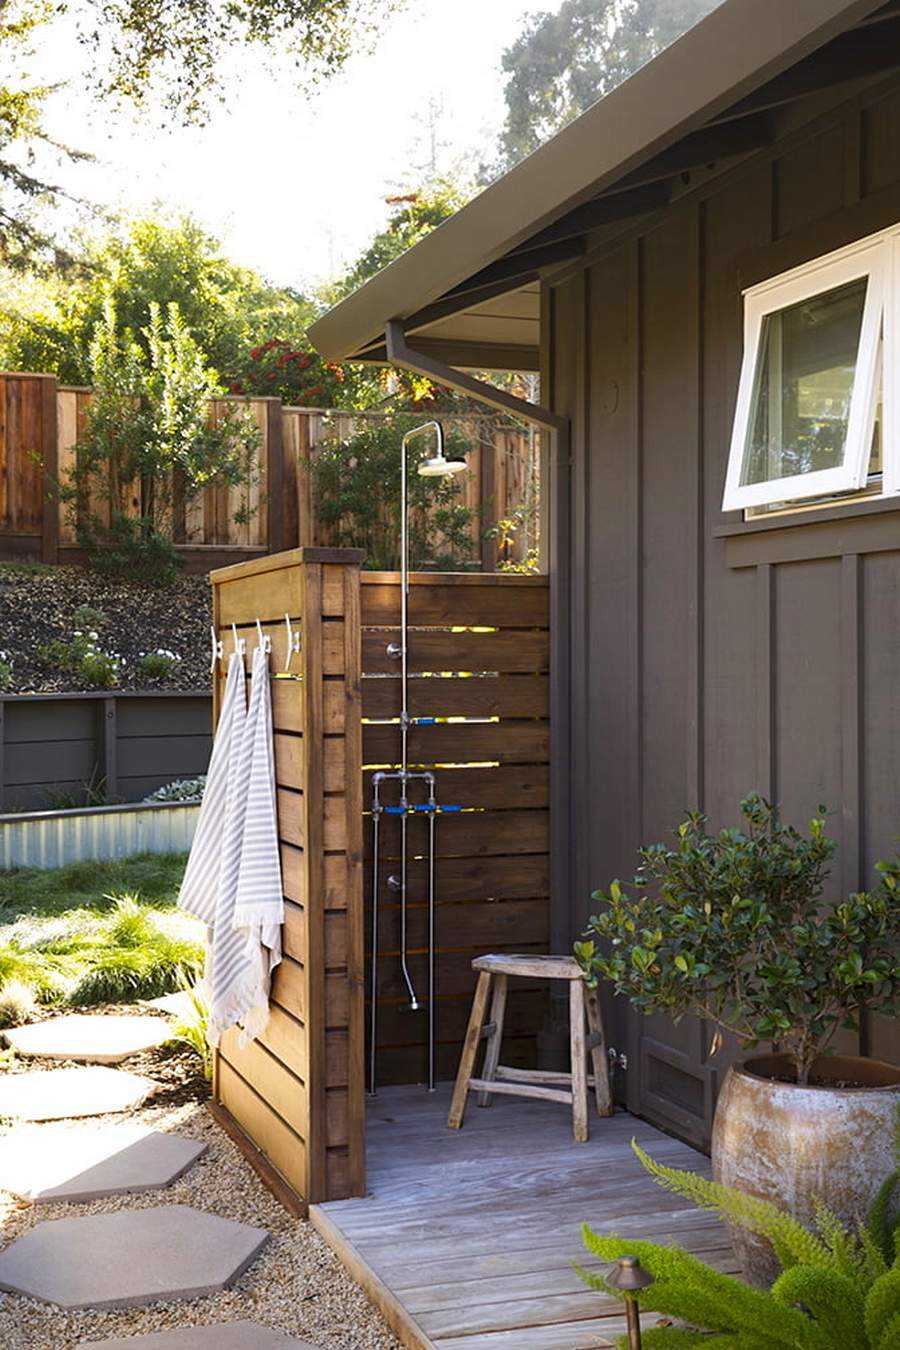 Как сделать летний душ на даче своими руками из подручных материалов: фото, чертежи